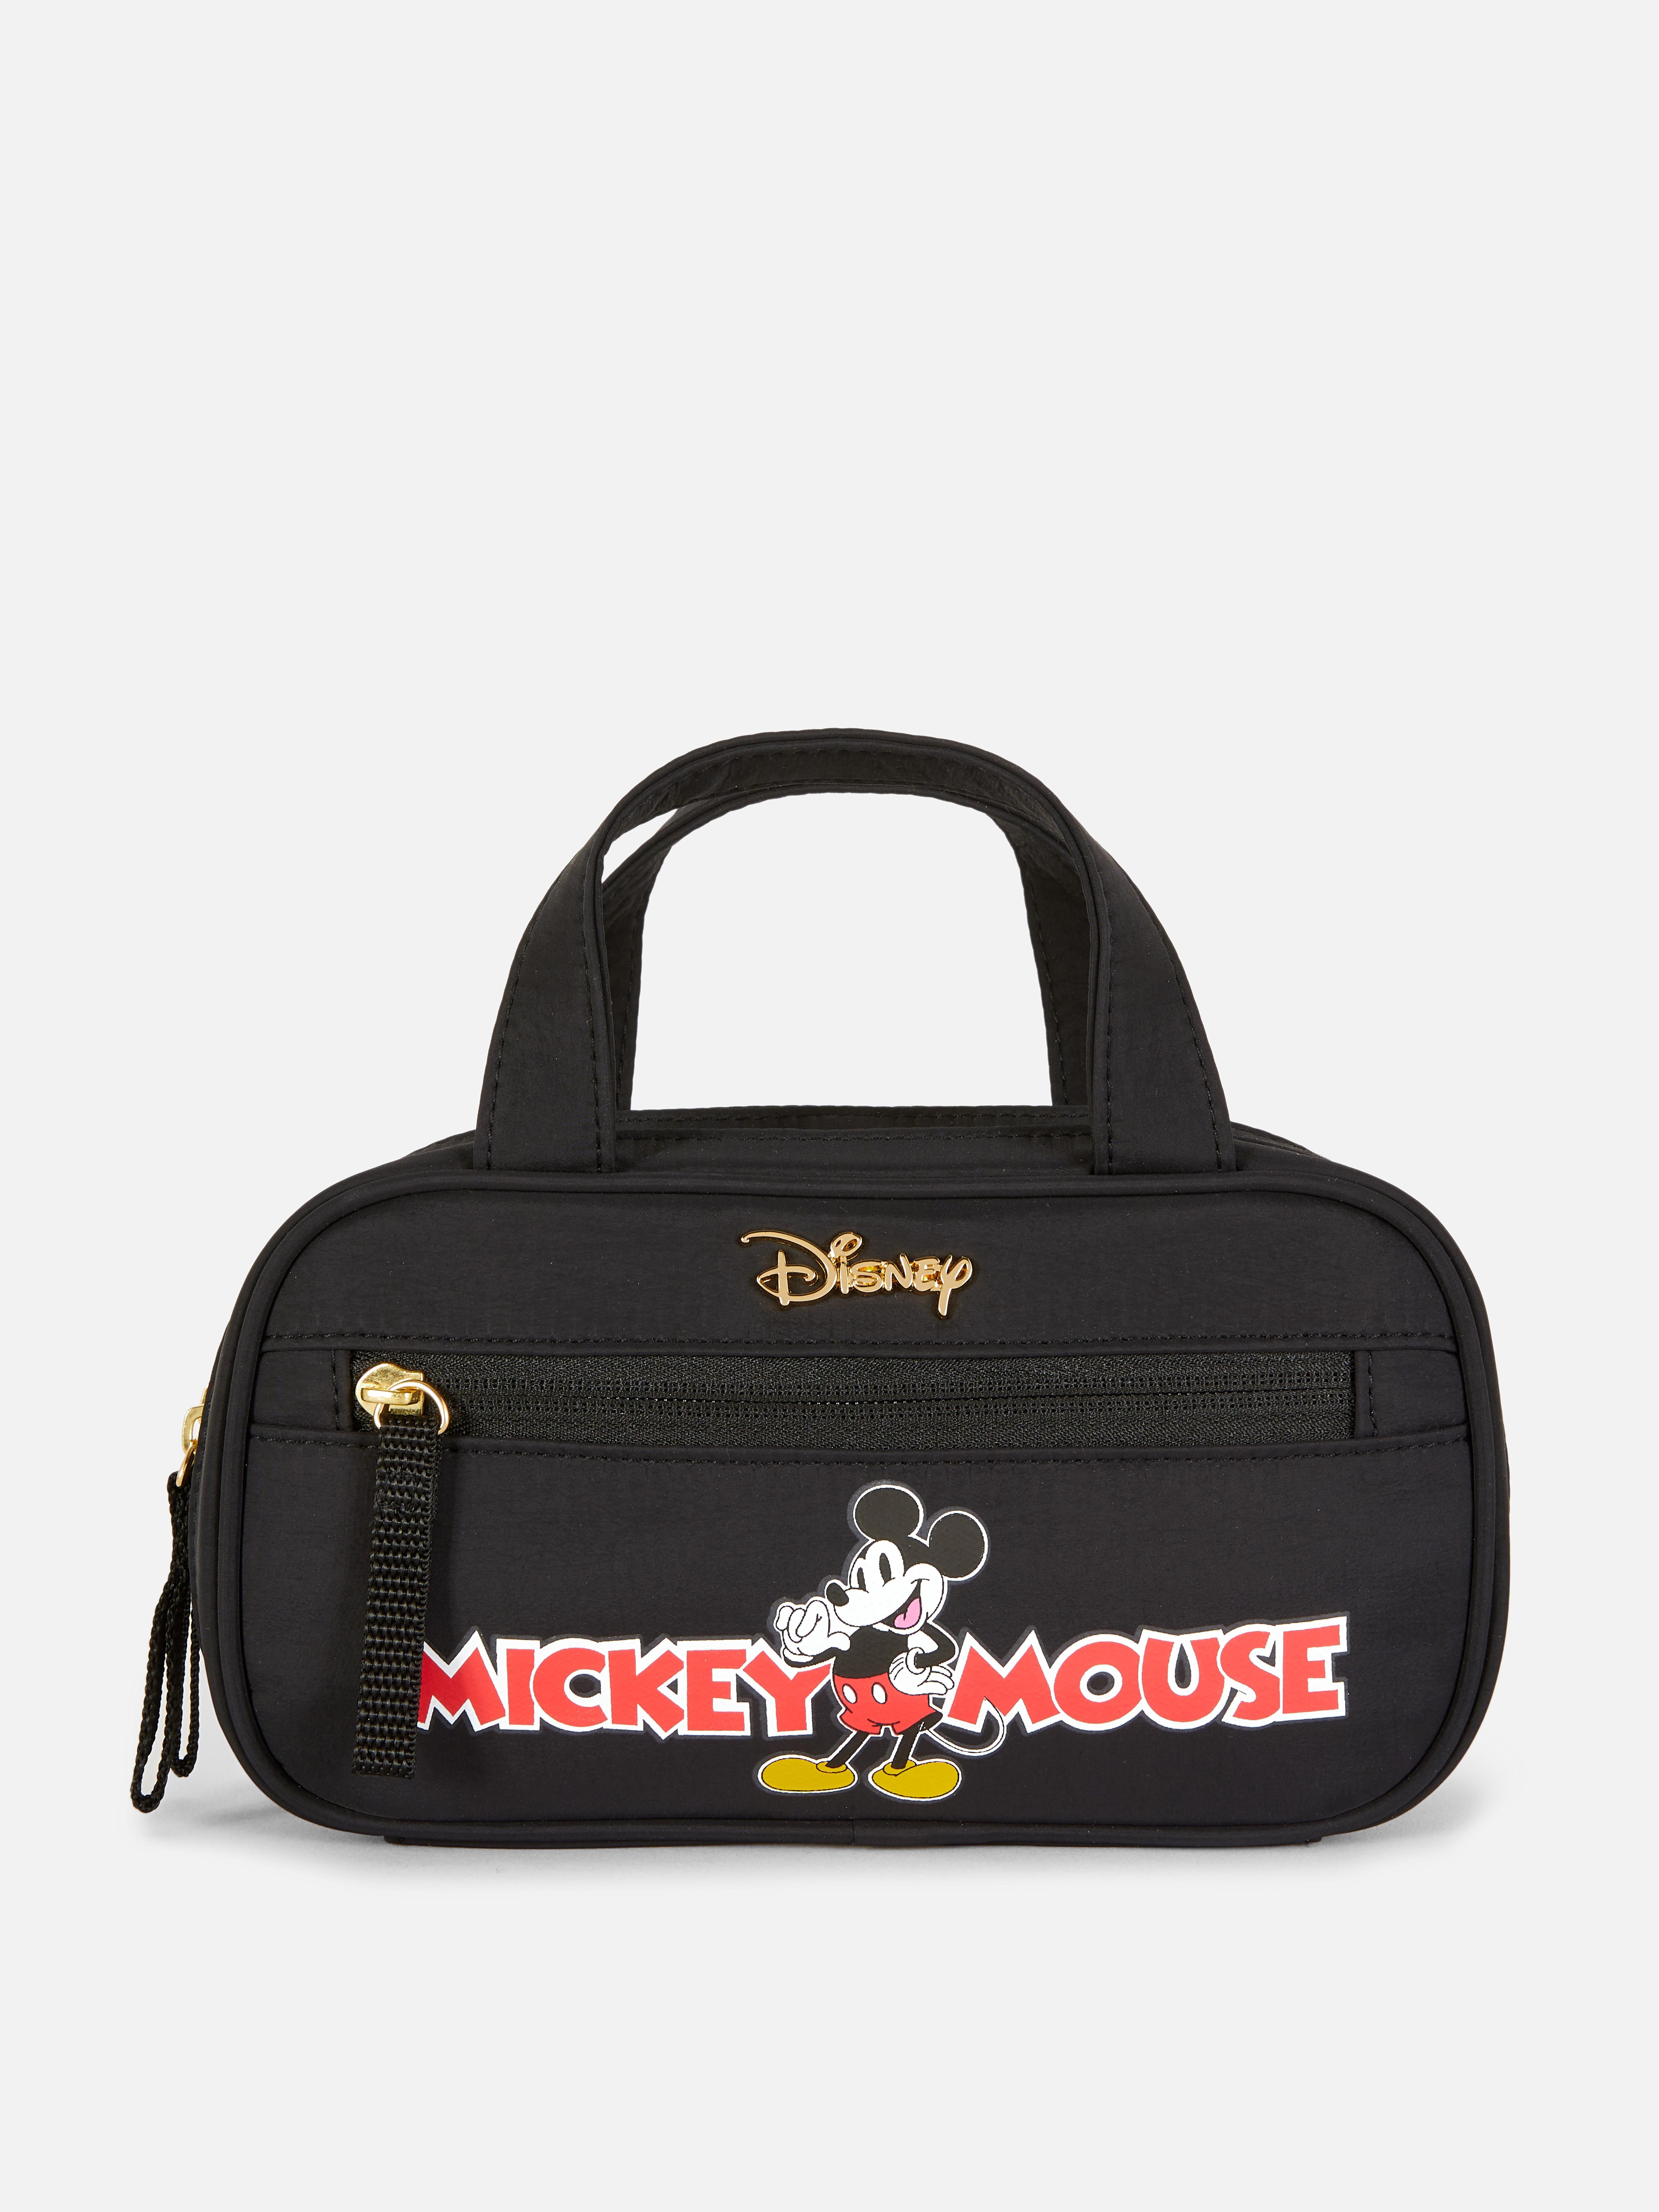 Nécessaire viagem Disney Mickey Mouse